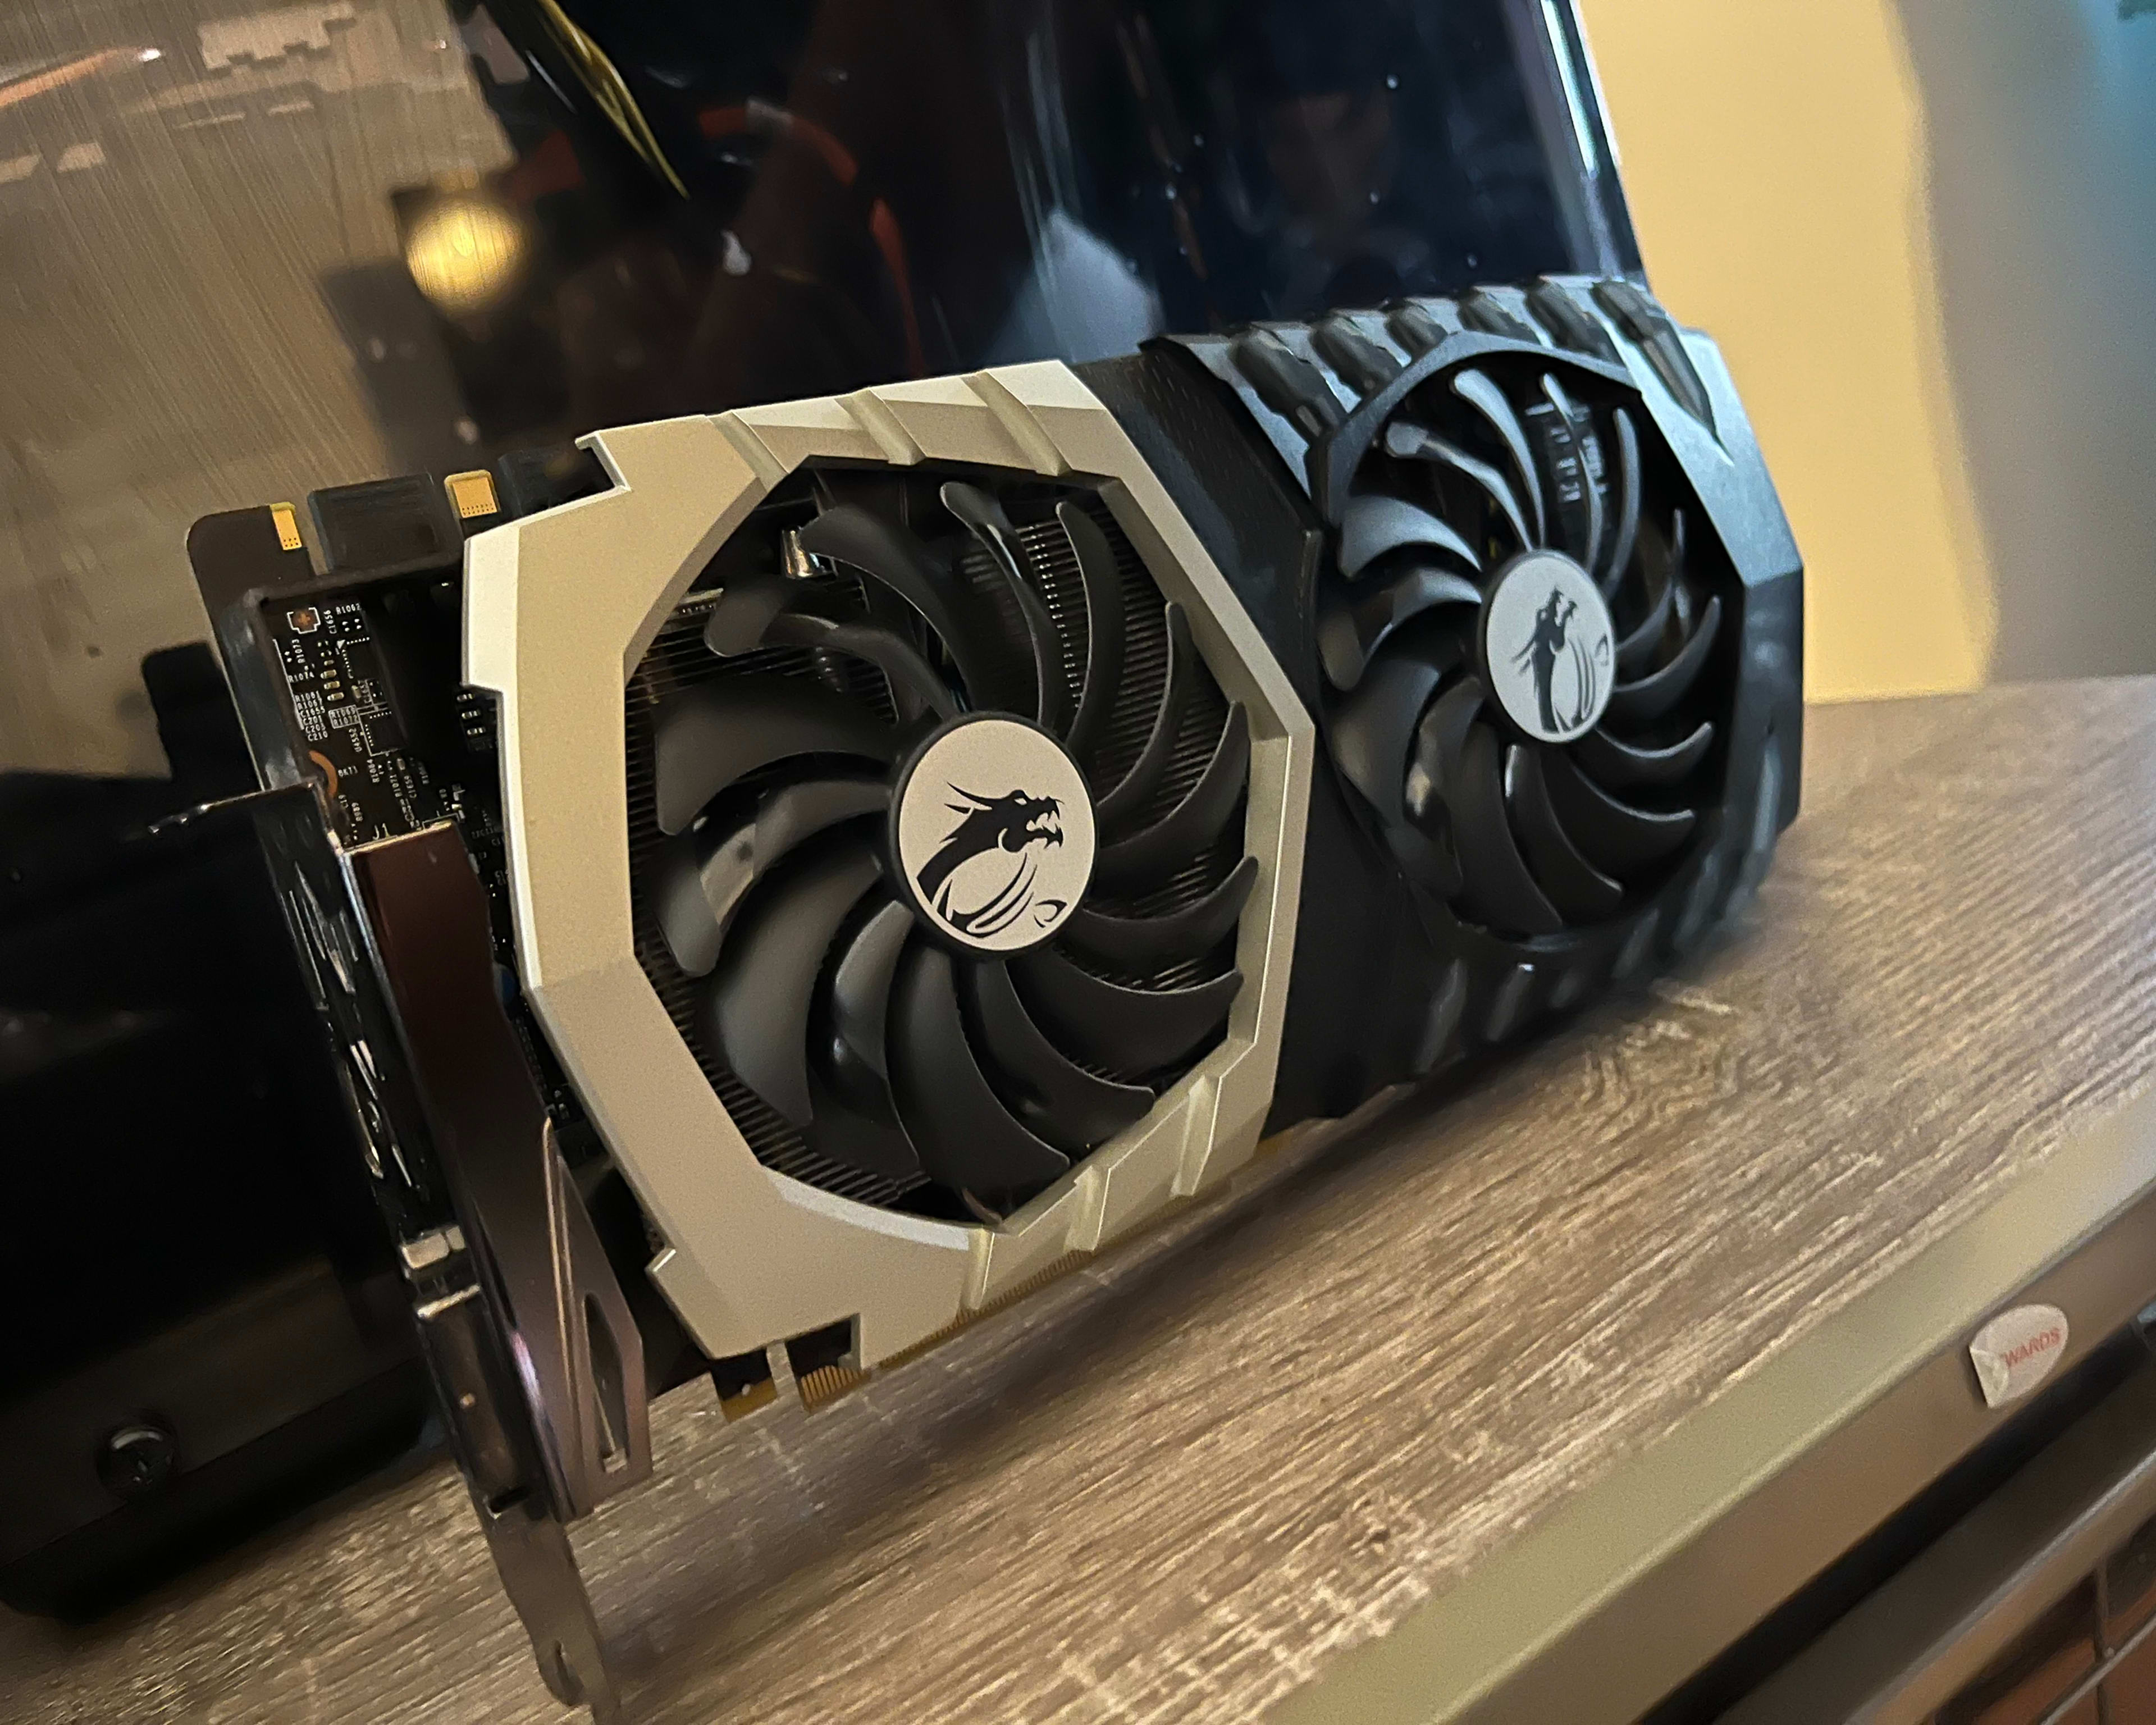 Nvidia GeForce 1070ti from MSI